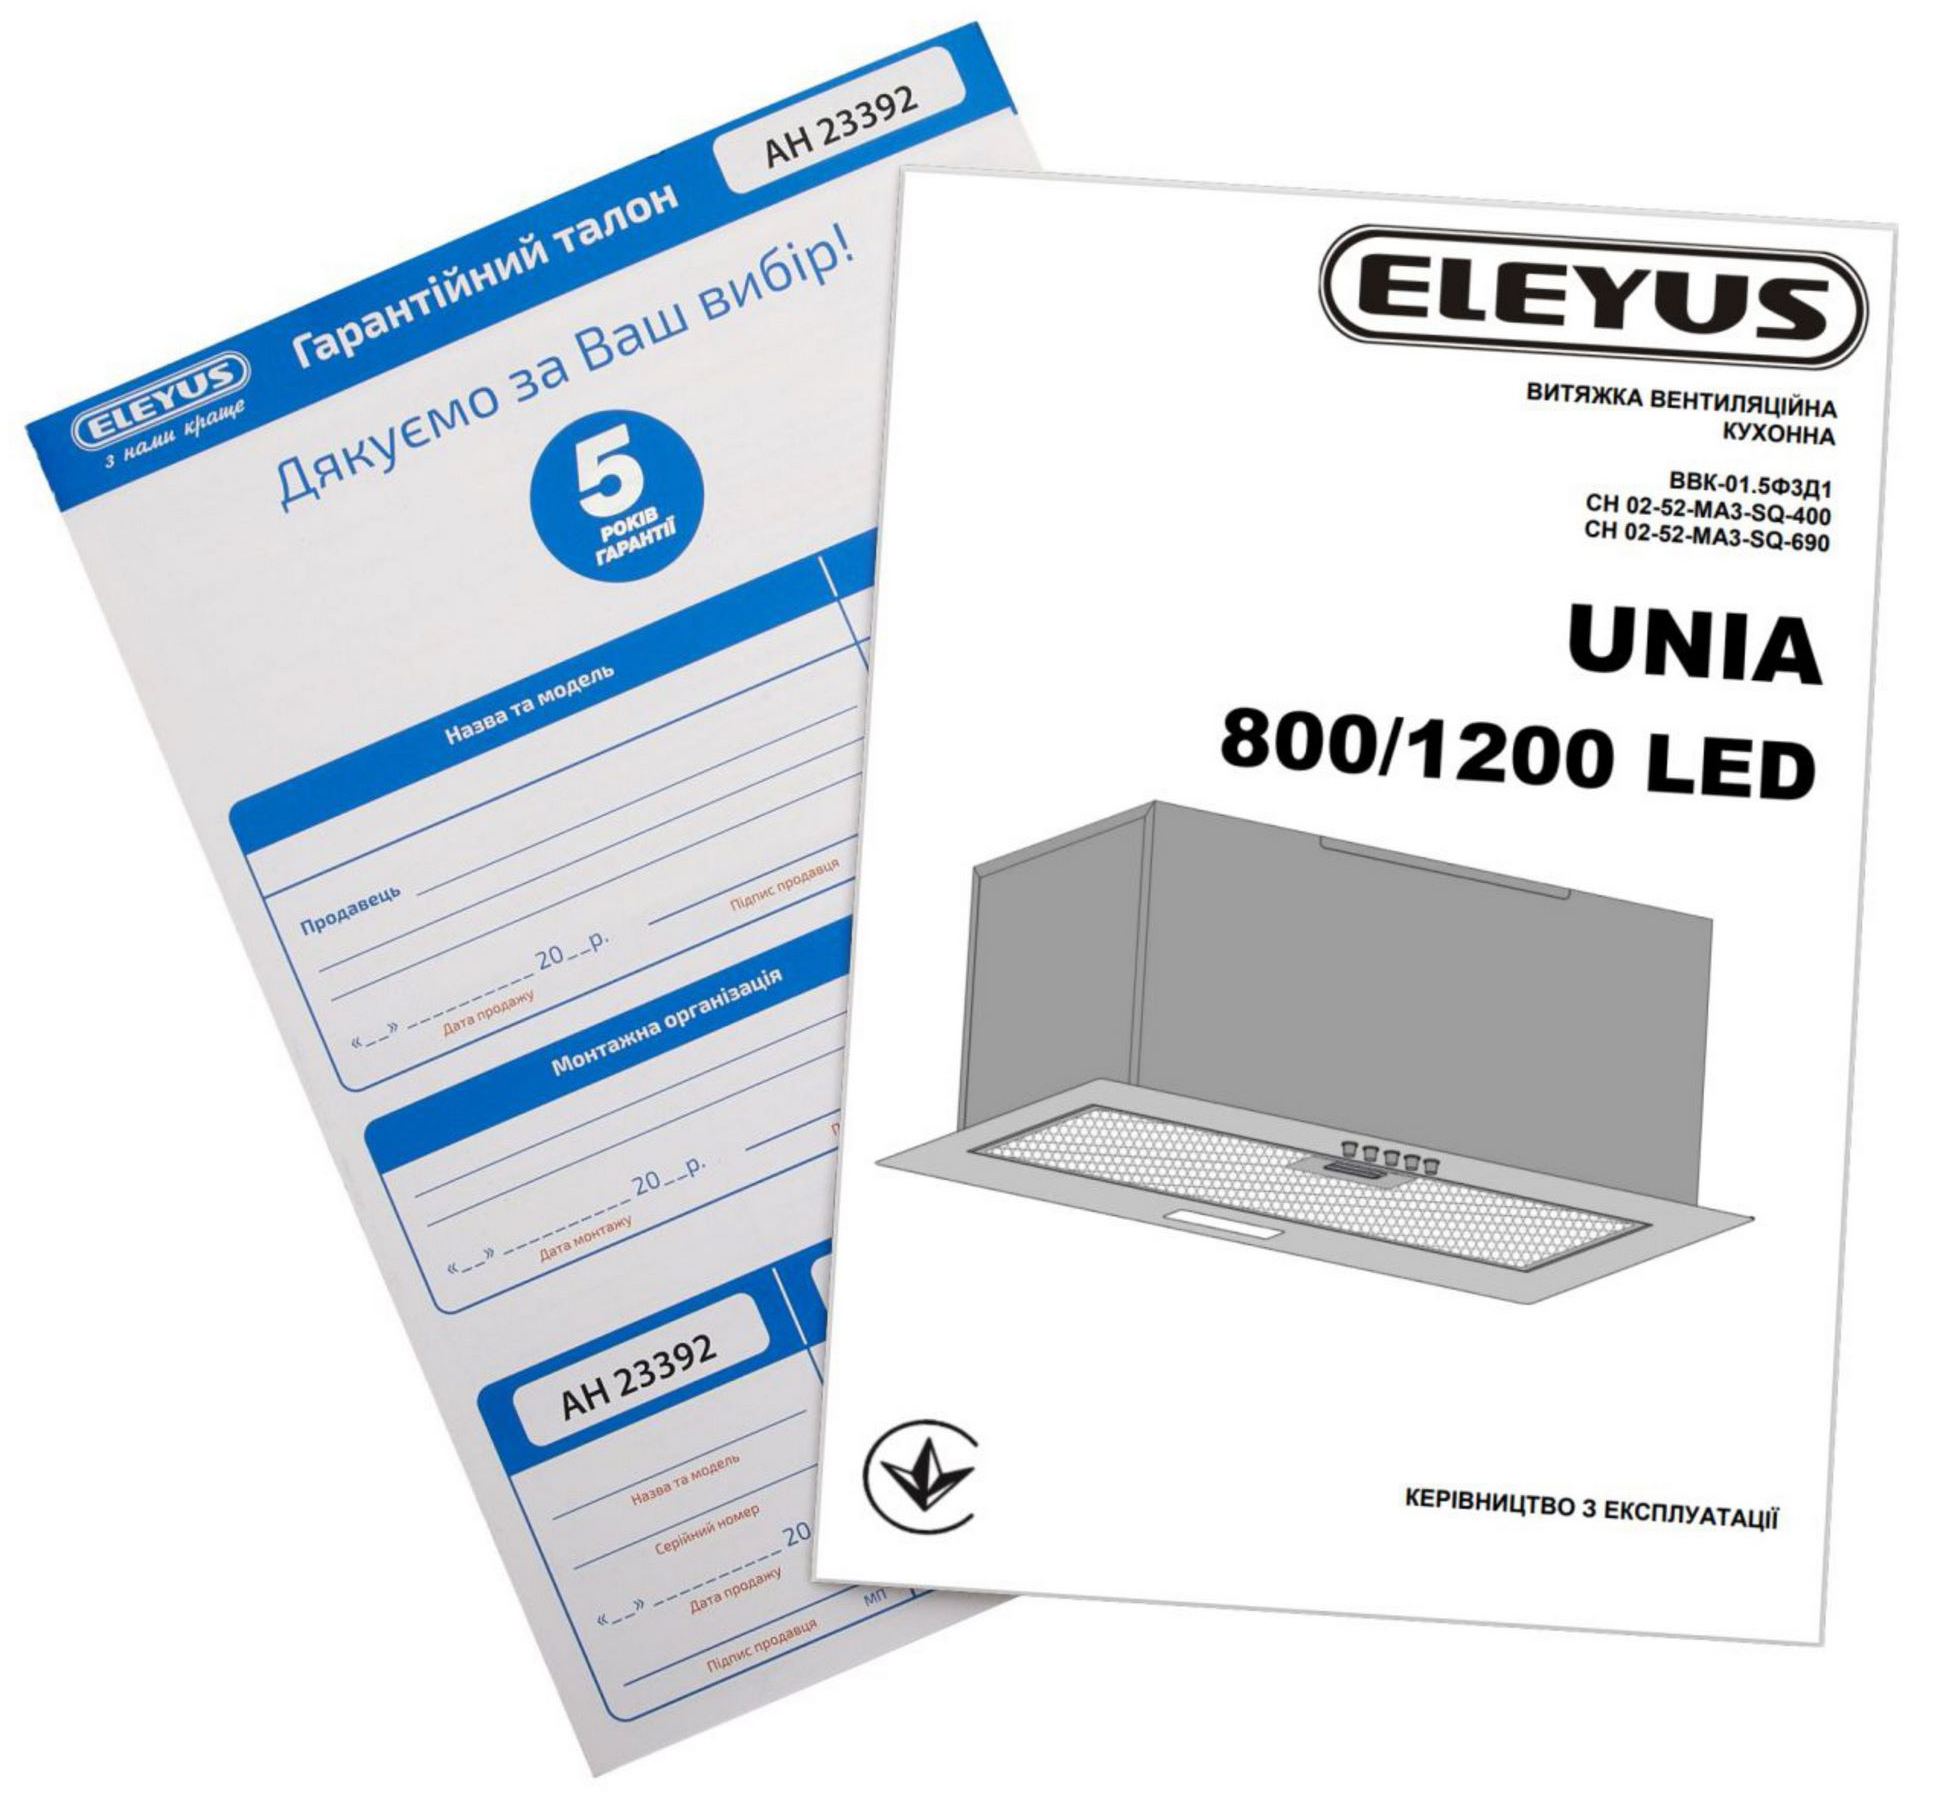 Eleyus Unia 800 LED 52 BL в магазине в Киеве - фото 10